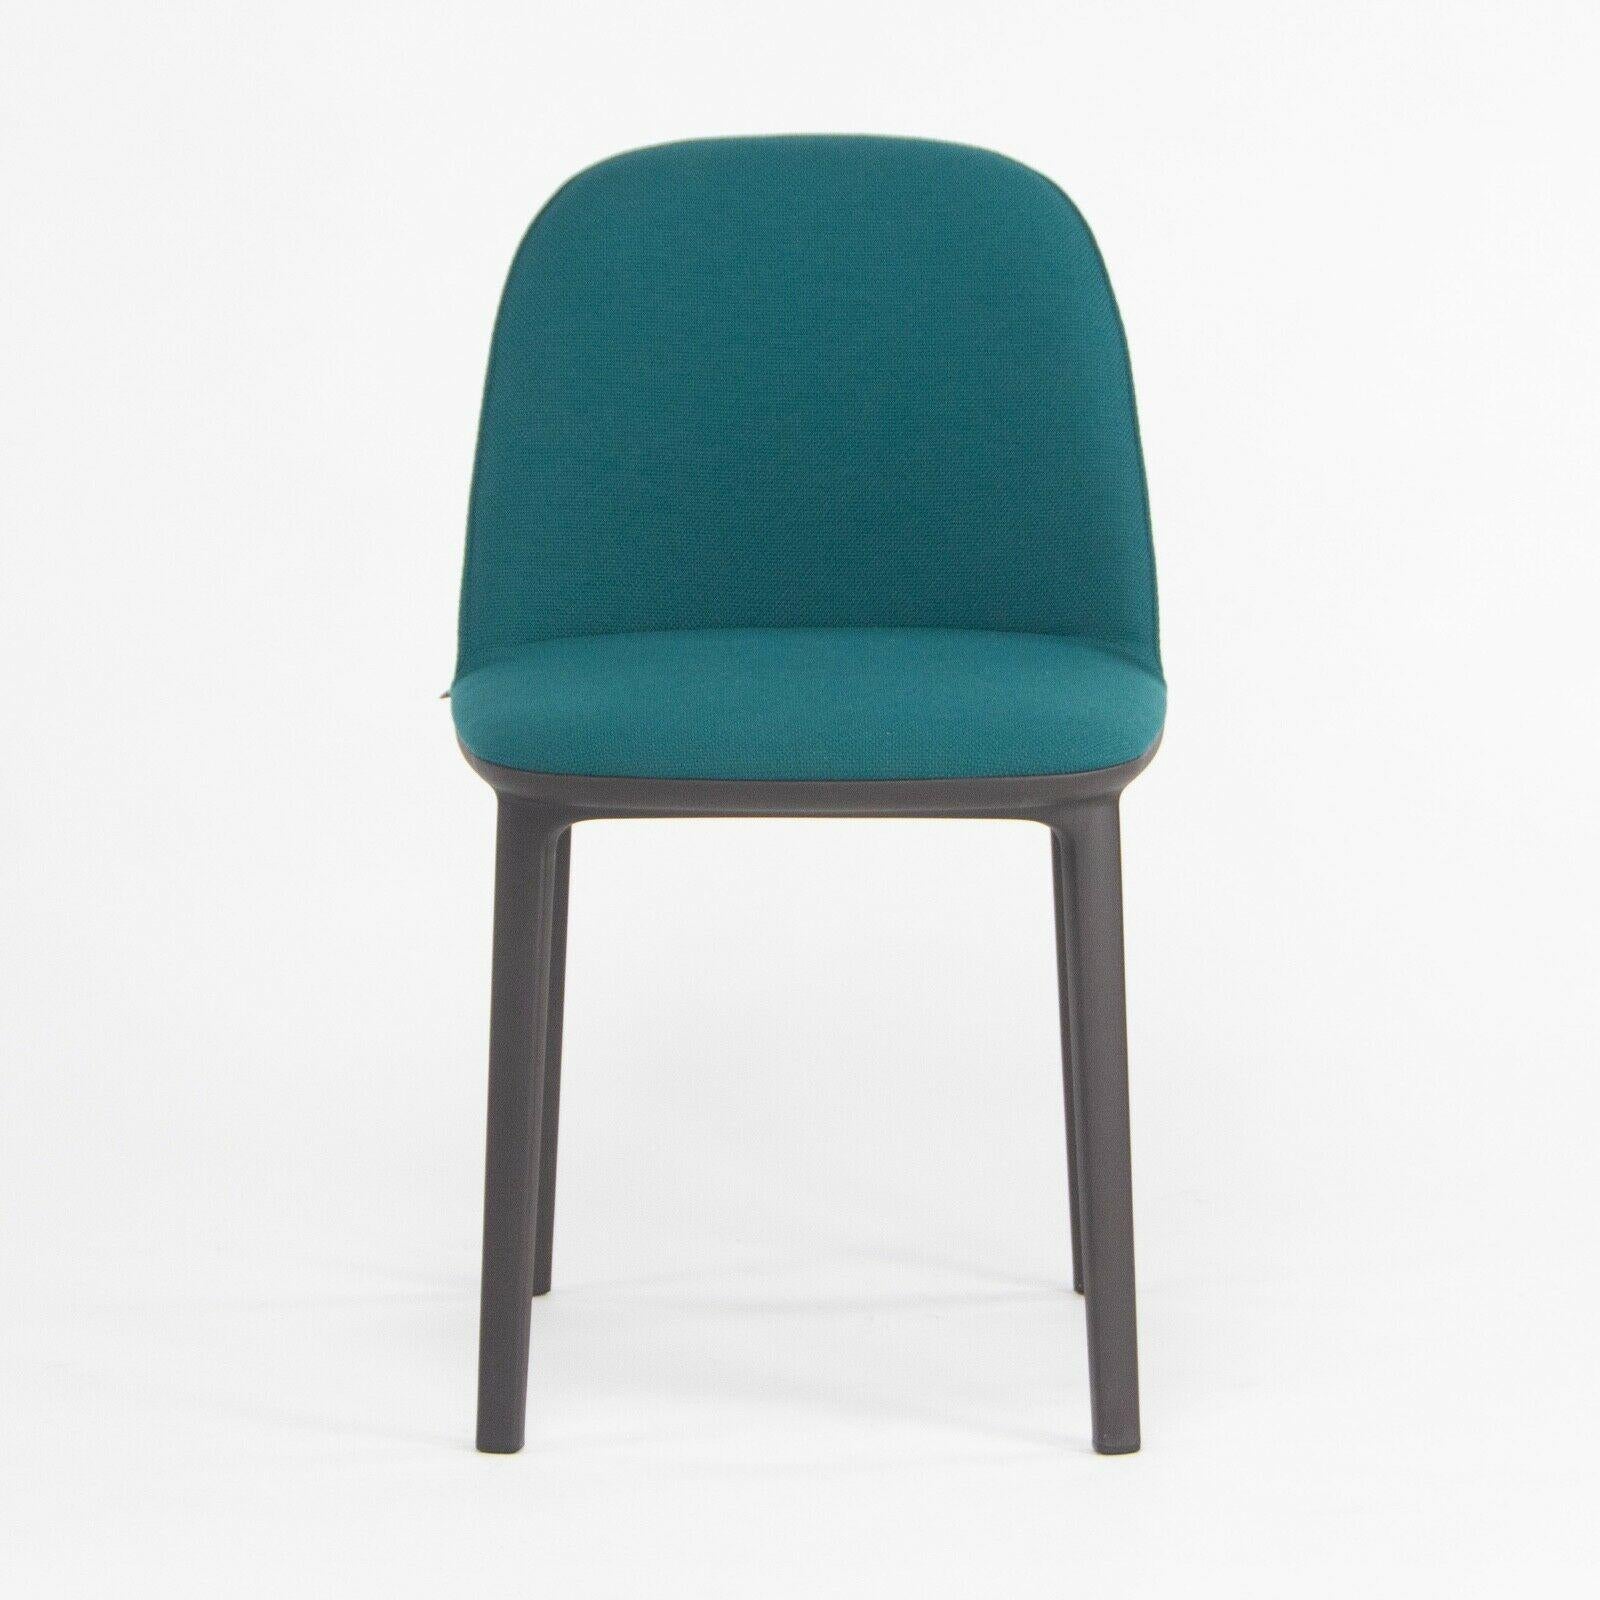 Zum Verkauf steht der Softshell Side Chair, entworfen von Ronan und Erwan Bouroullec und hergestellt von Vitra. Dieser Stuhl wurde mit einem schokoladenfarbenen (sehr dunklen) Kunststoffgestell und einem mit blaugrünem Stoff bezogenen Sitz